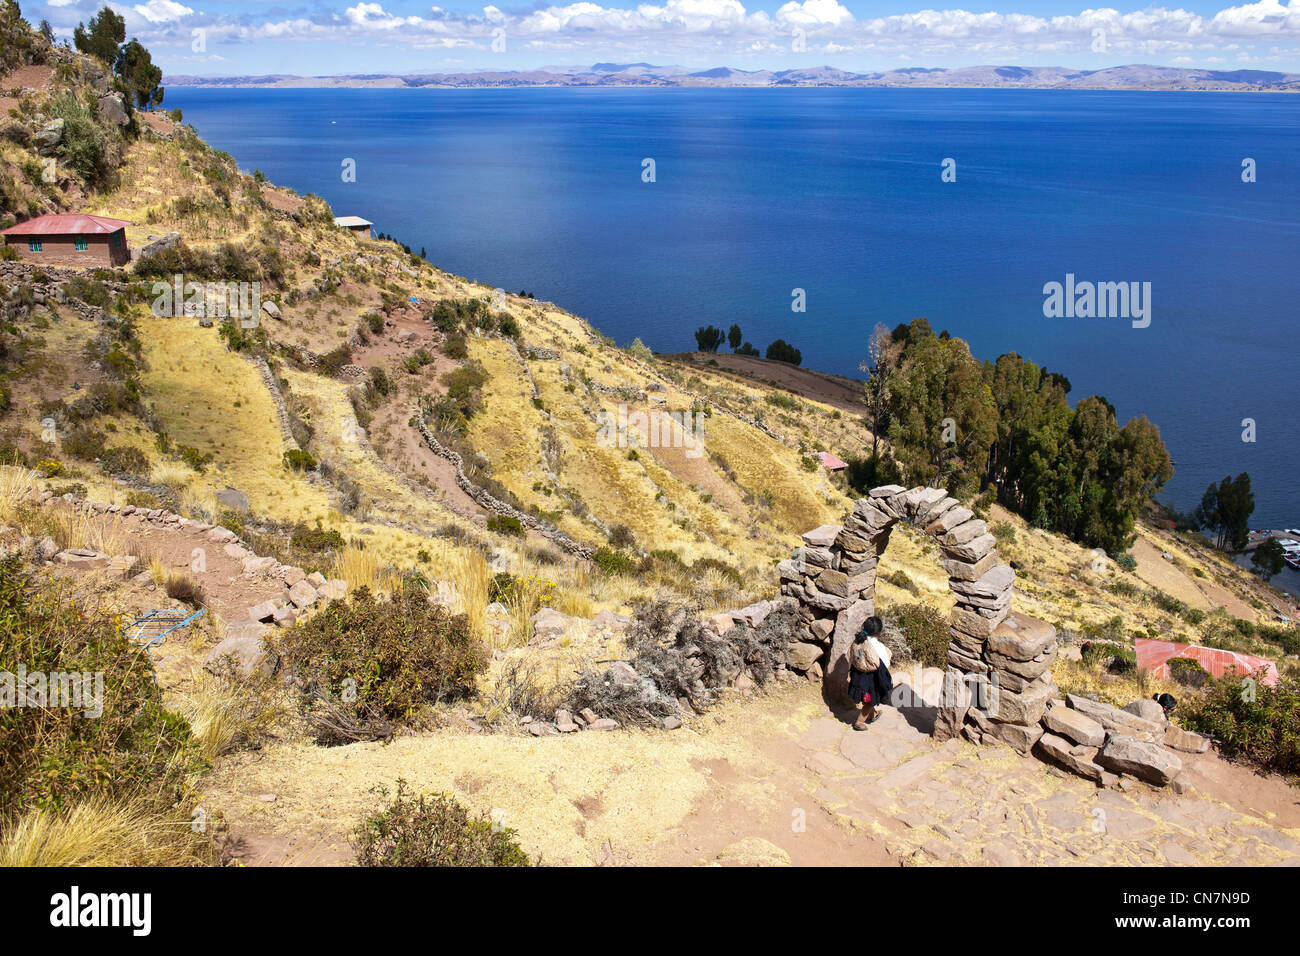 Le Pérou, Puno, lac Titicaca, province de l'île de Taquile, il y a 533 marches pour atteindre sur le principal en forme d'arche entrée du village Banque D'Images